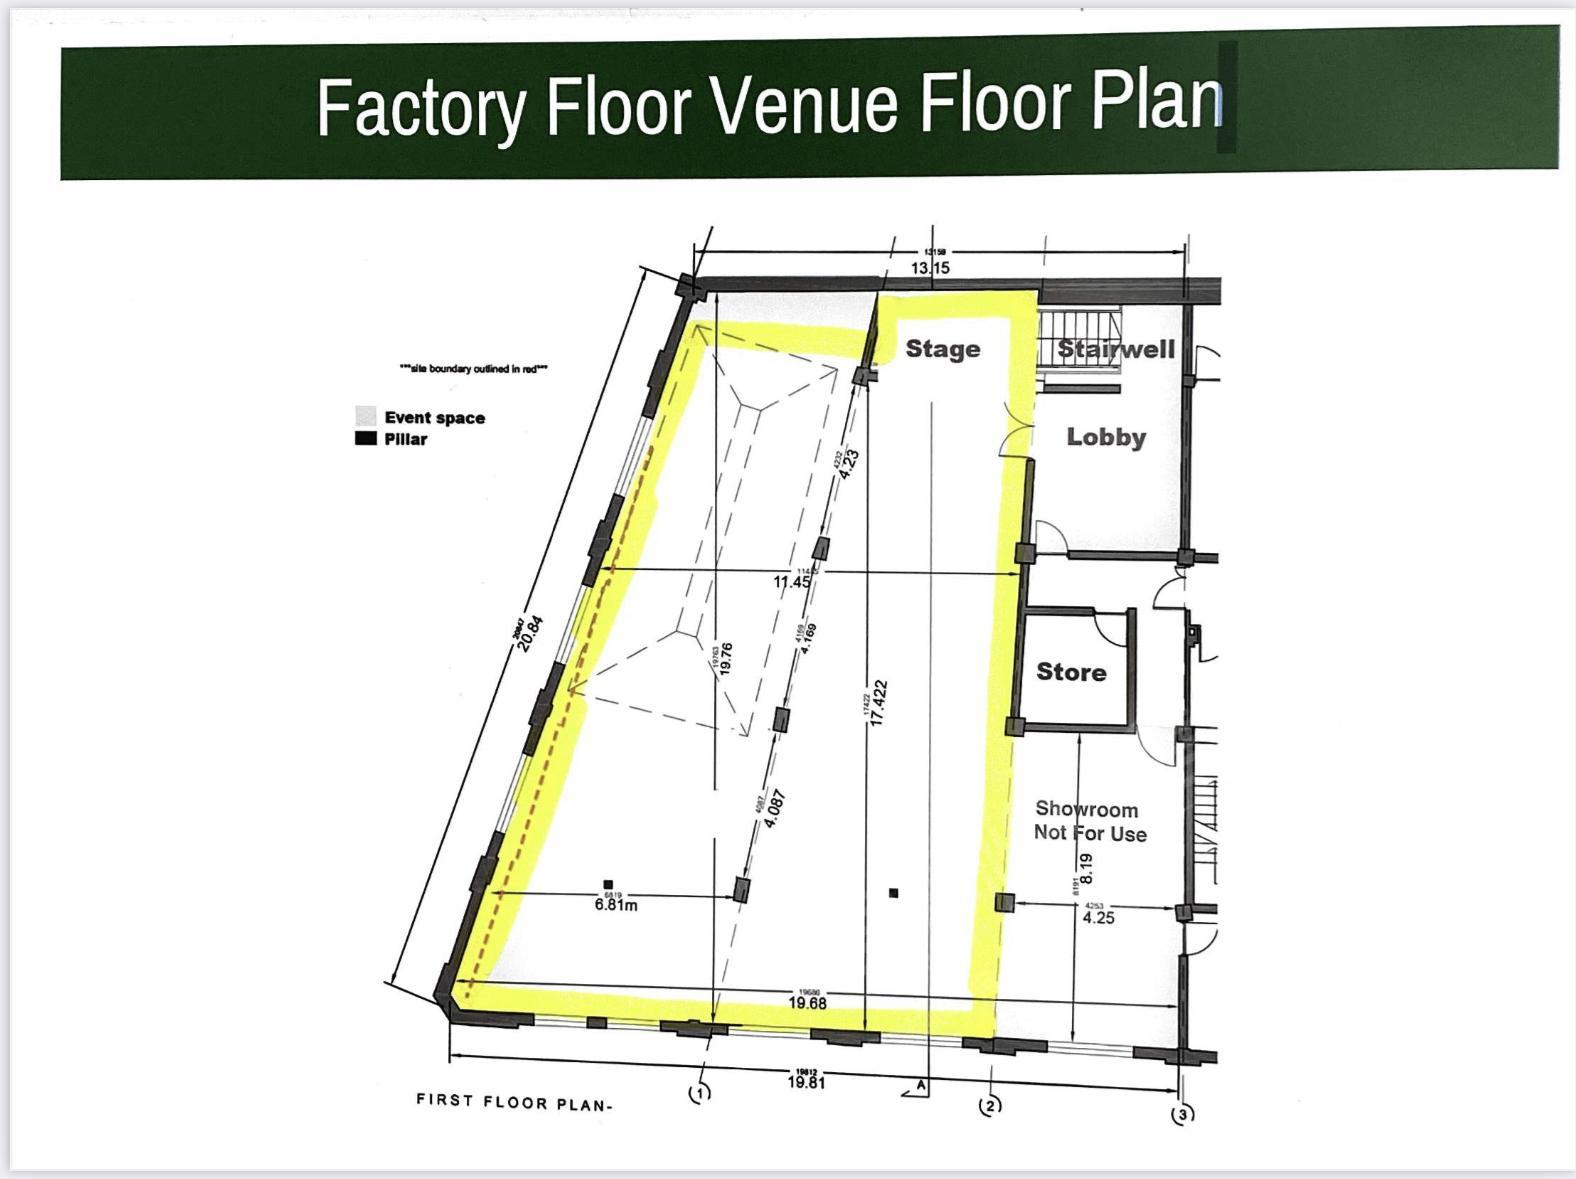 The Factory Floor